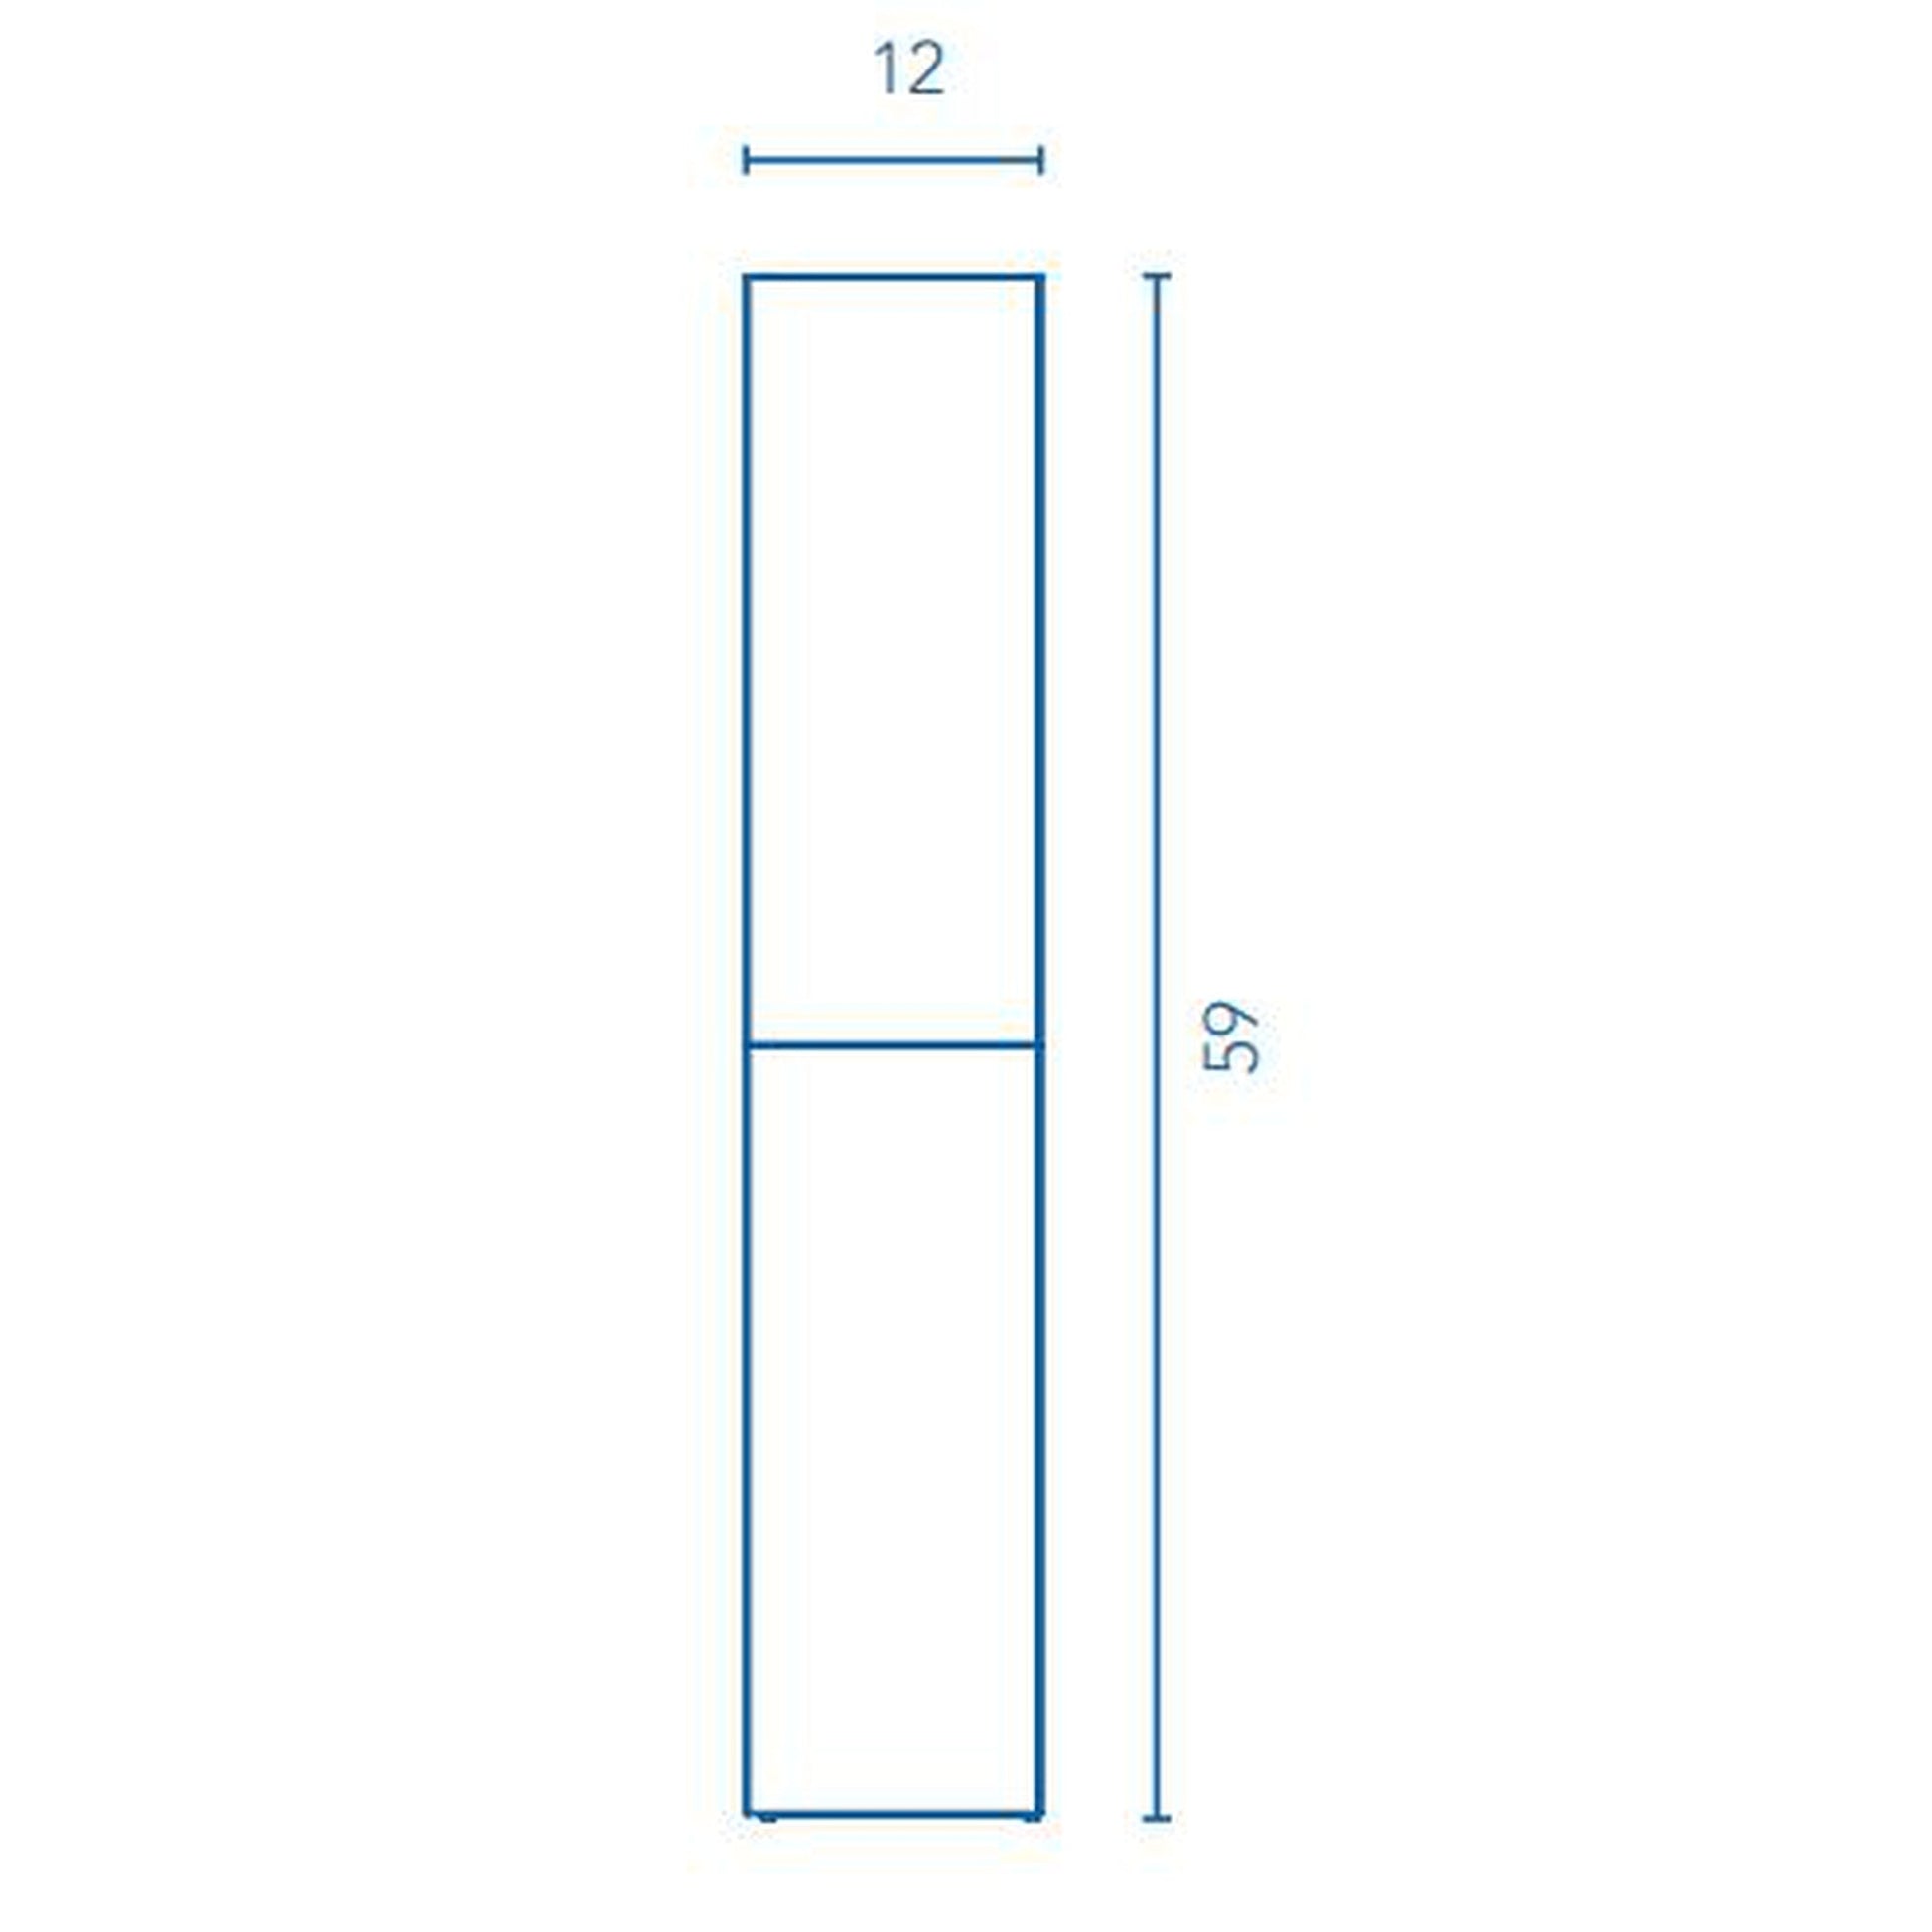 Royo Vida 12" x 59" Nature Beige Column With 2 Doors & Adjustable Shelves